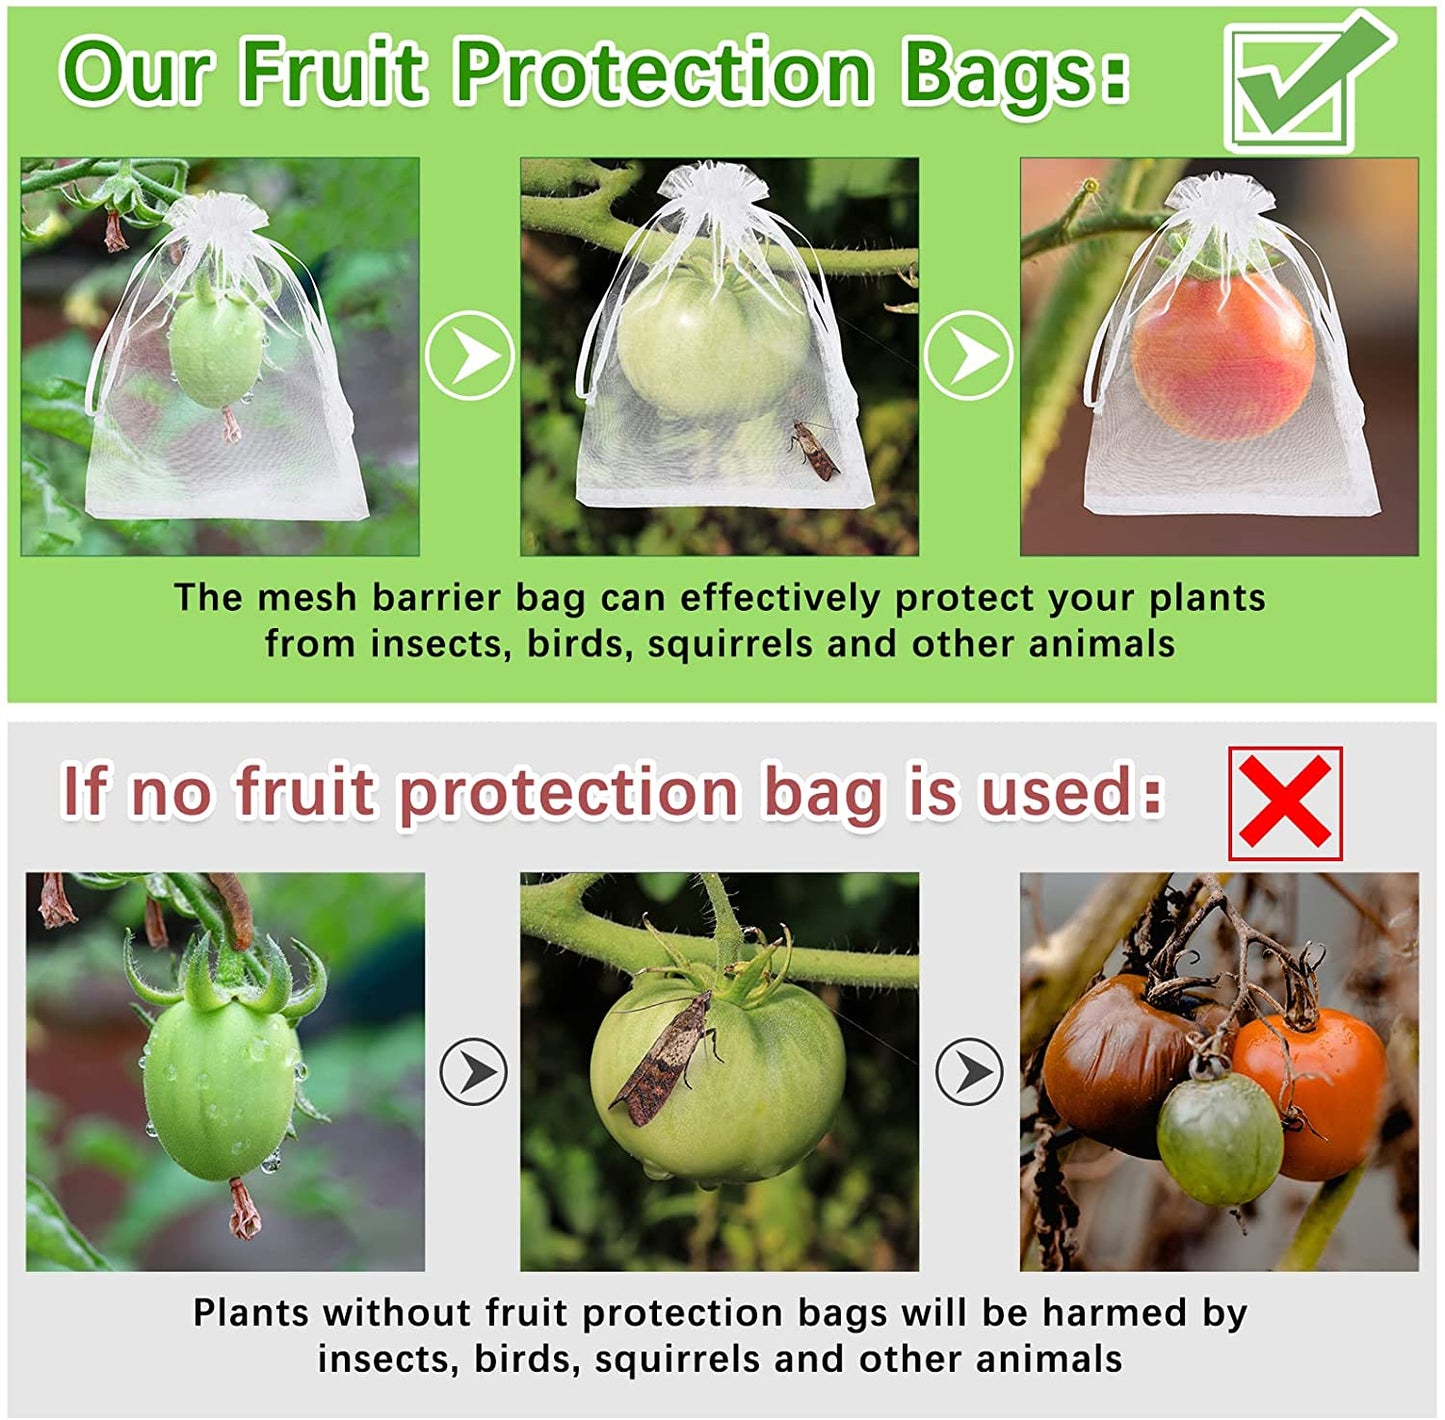 Saquinho para proteger frutas no pé, horta, pomar e jardim